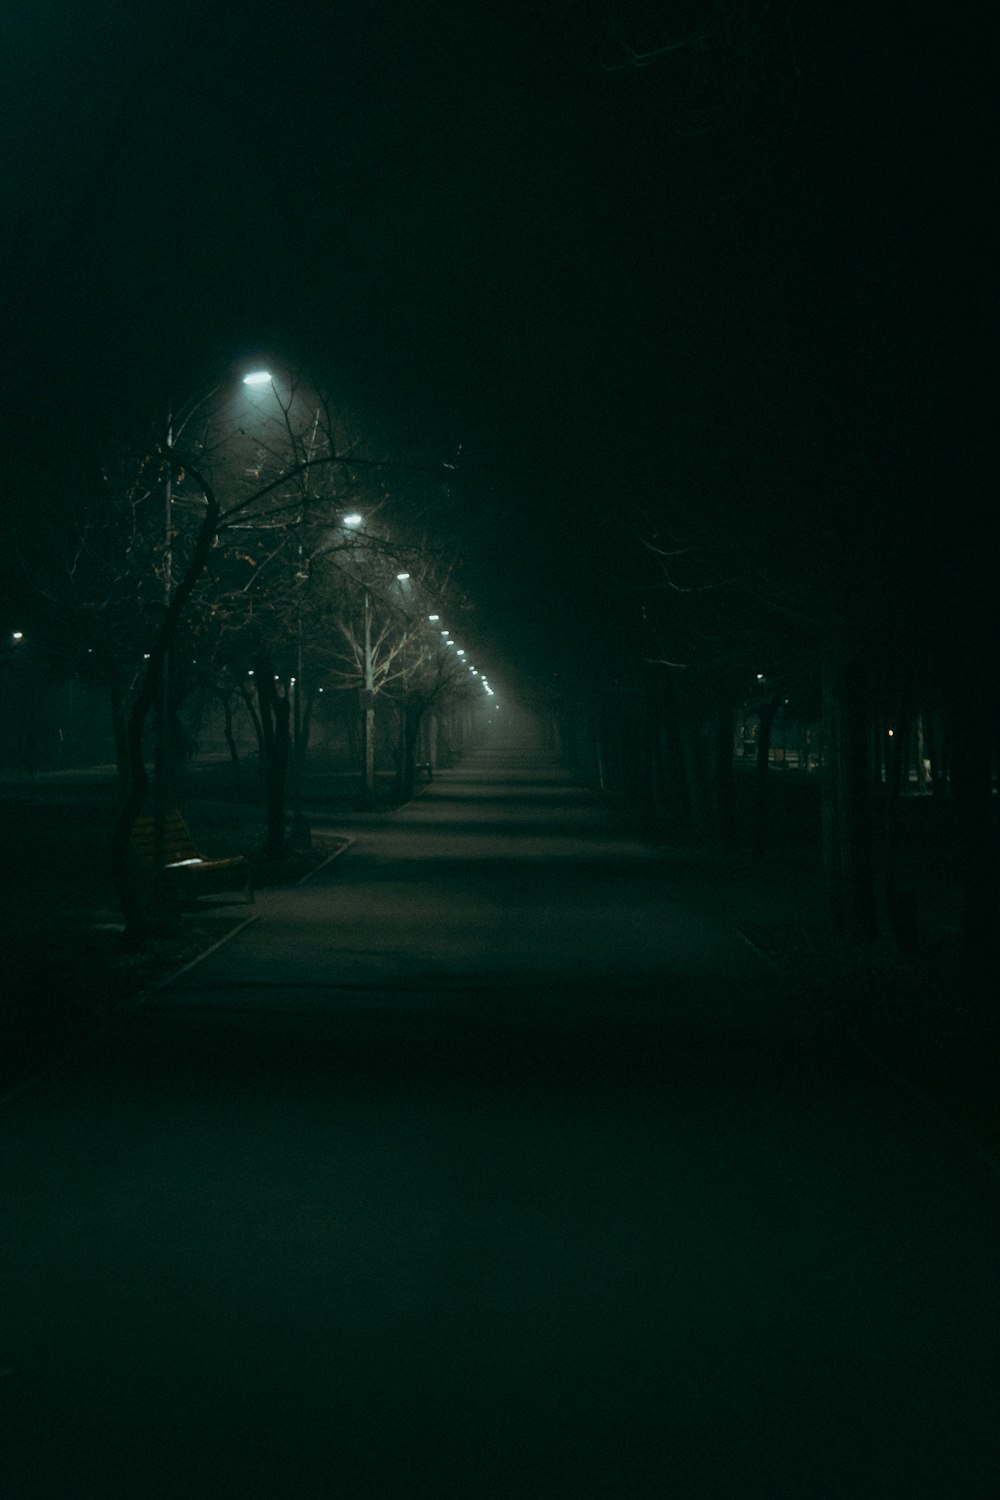 Eine dunkle Straße bei Nacht mit Straßenlaternen